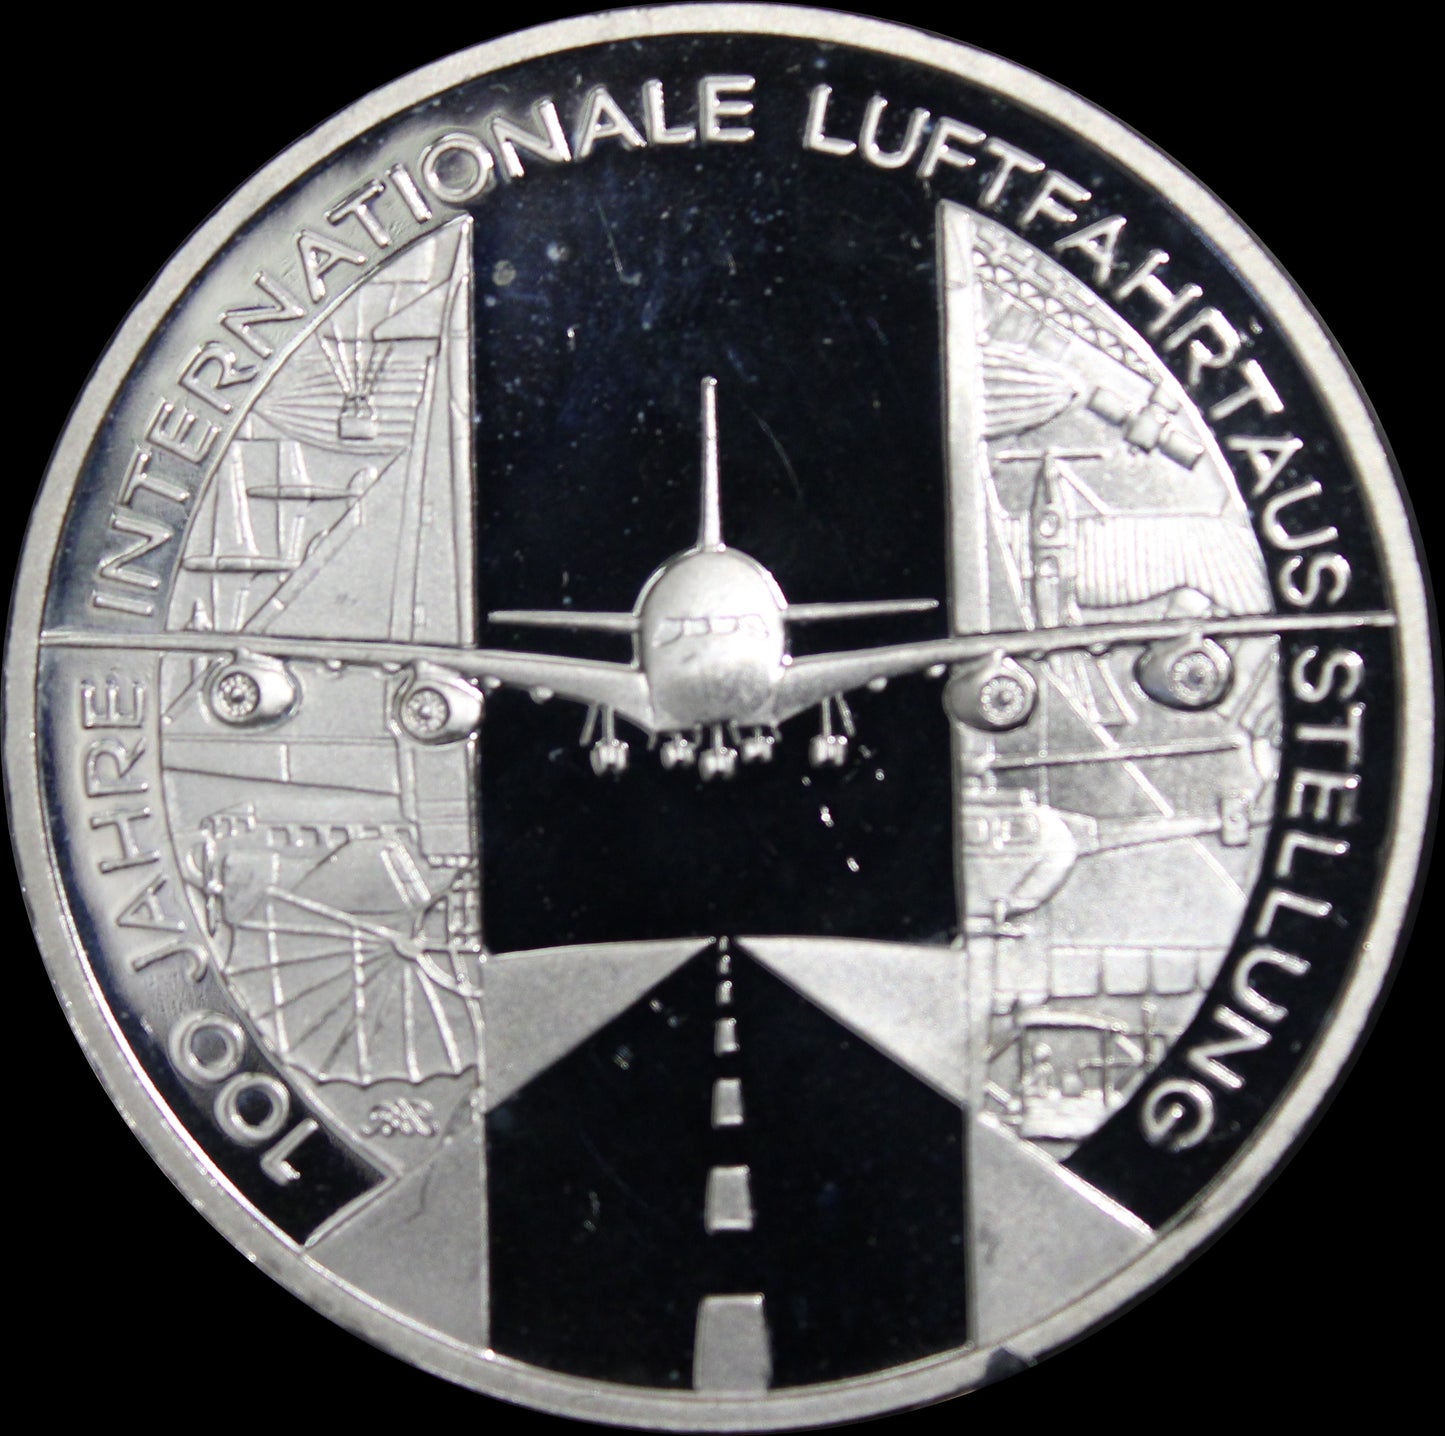 100 JAHRE INTERNATIONALE LUFTFAHRTAUSSTELLUNG, Serie 10 € Silber Gedenkmünzen Deutschland,Spiegelglanz, 2009